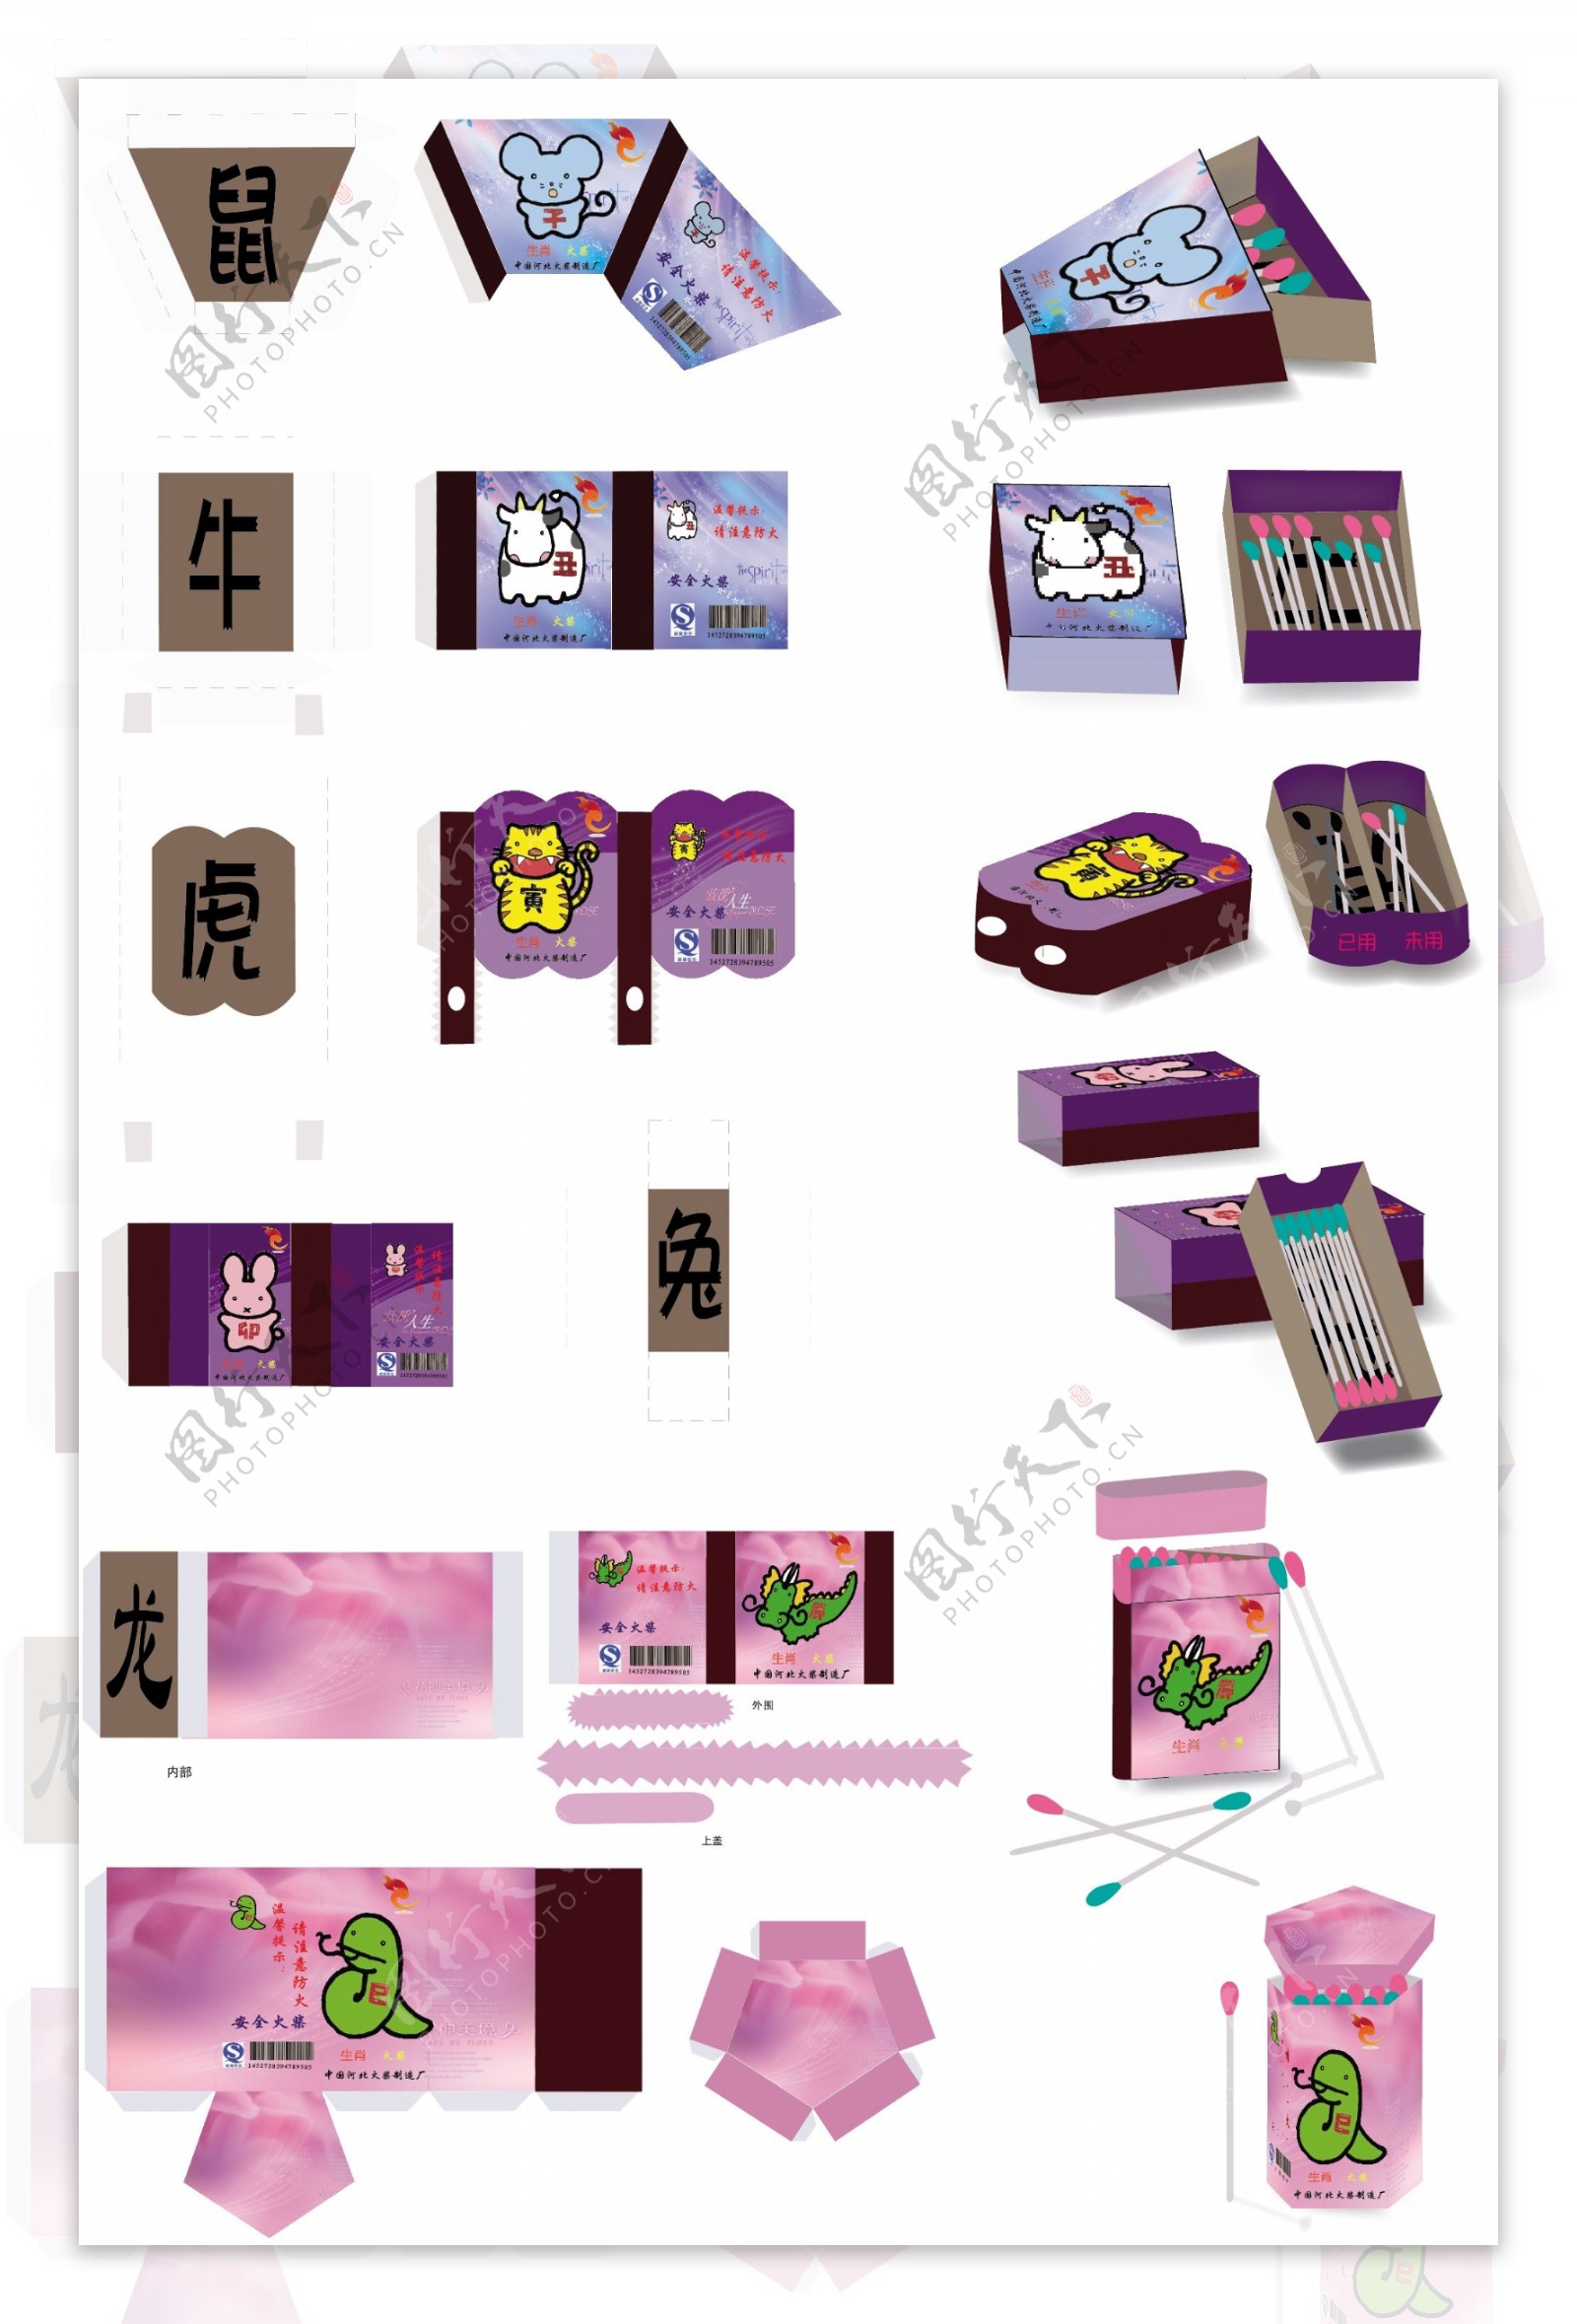 12生肖火柴创意包装盒图片